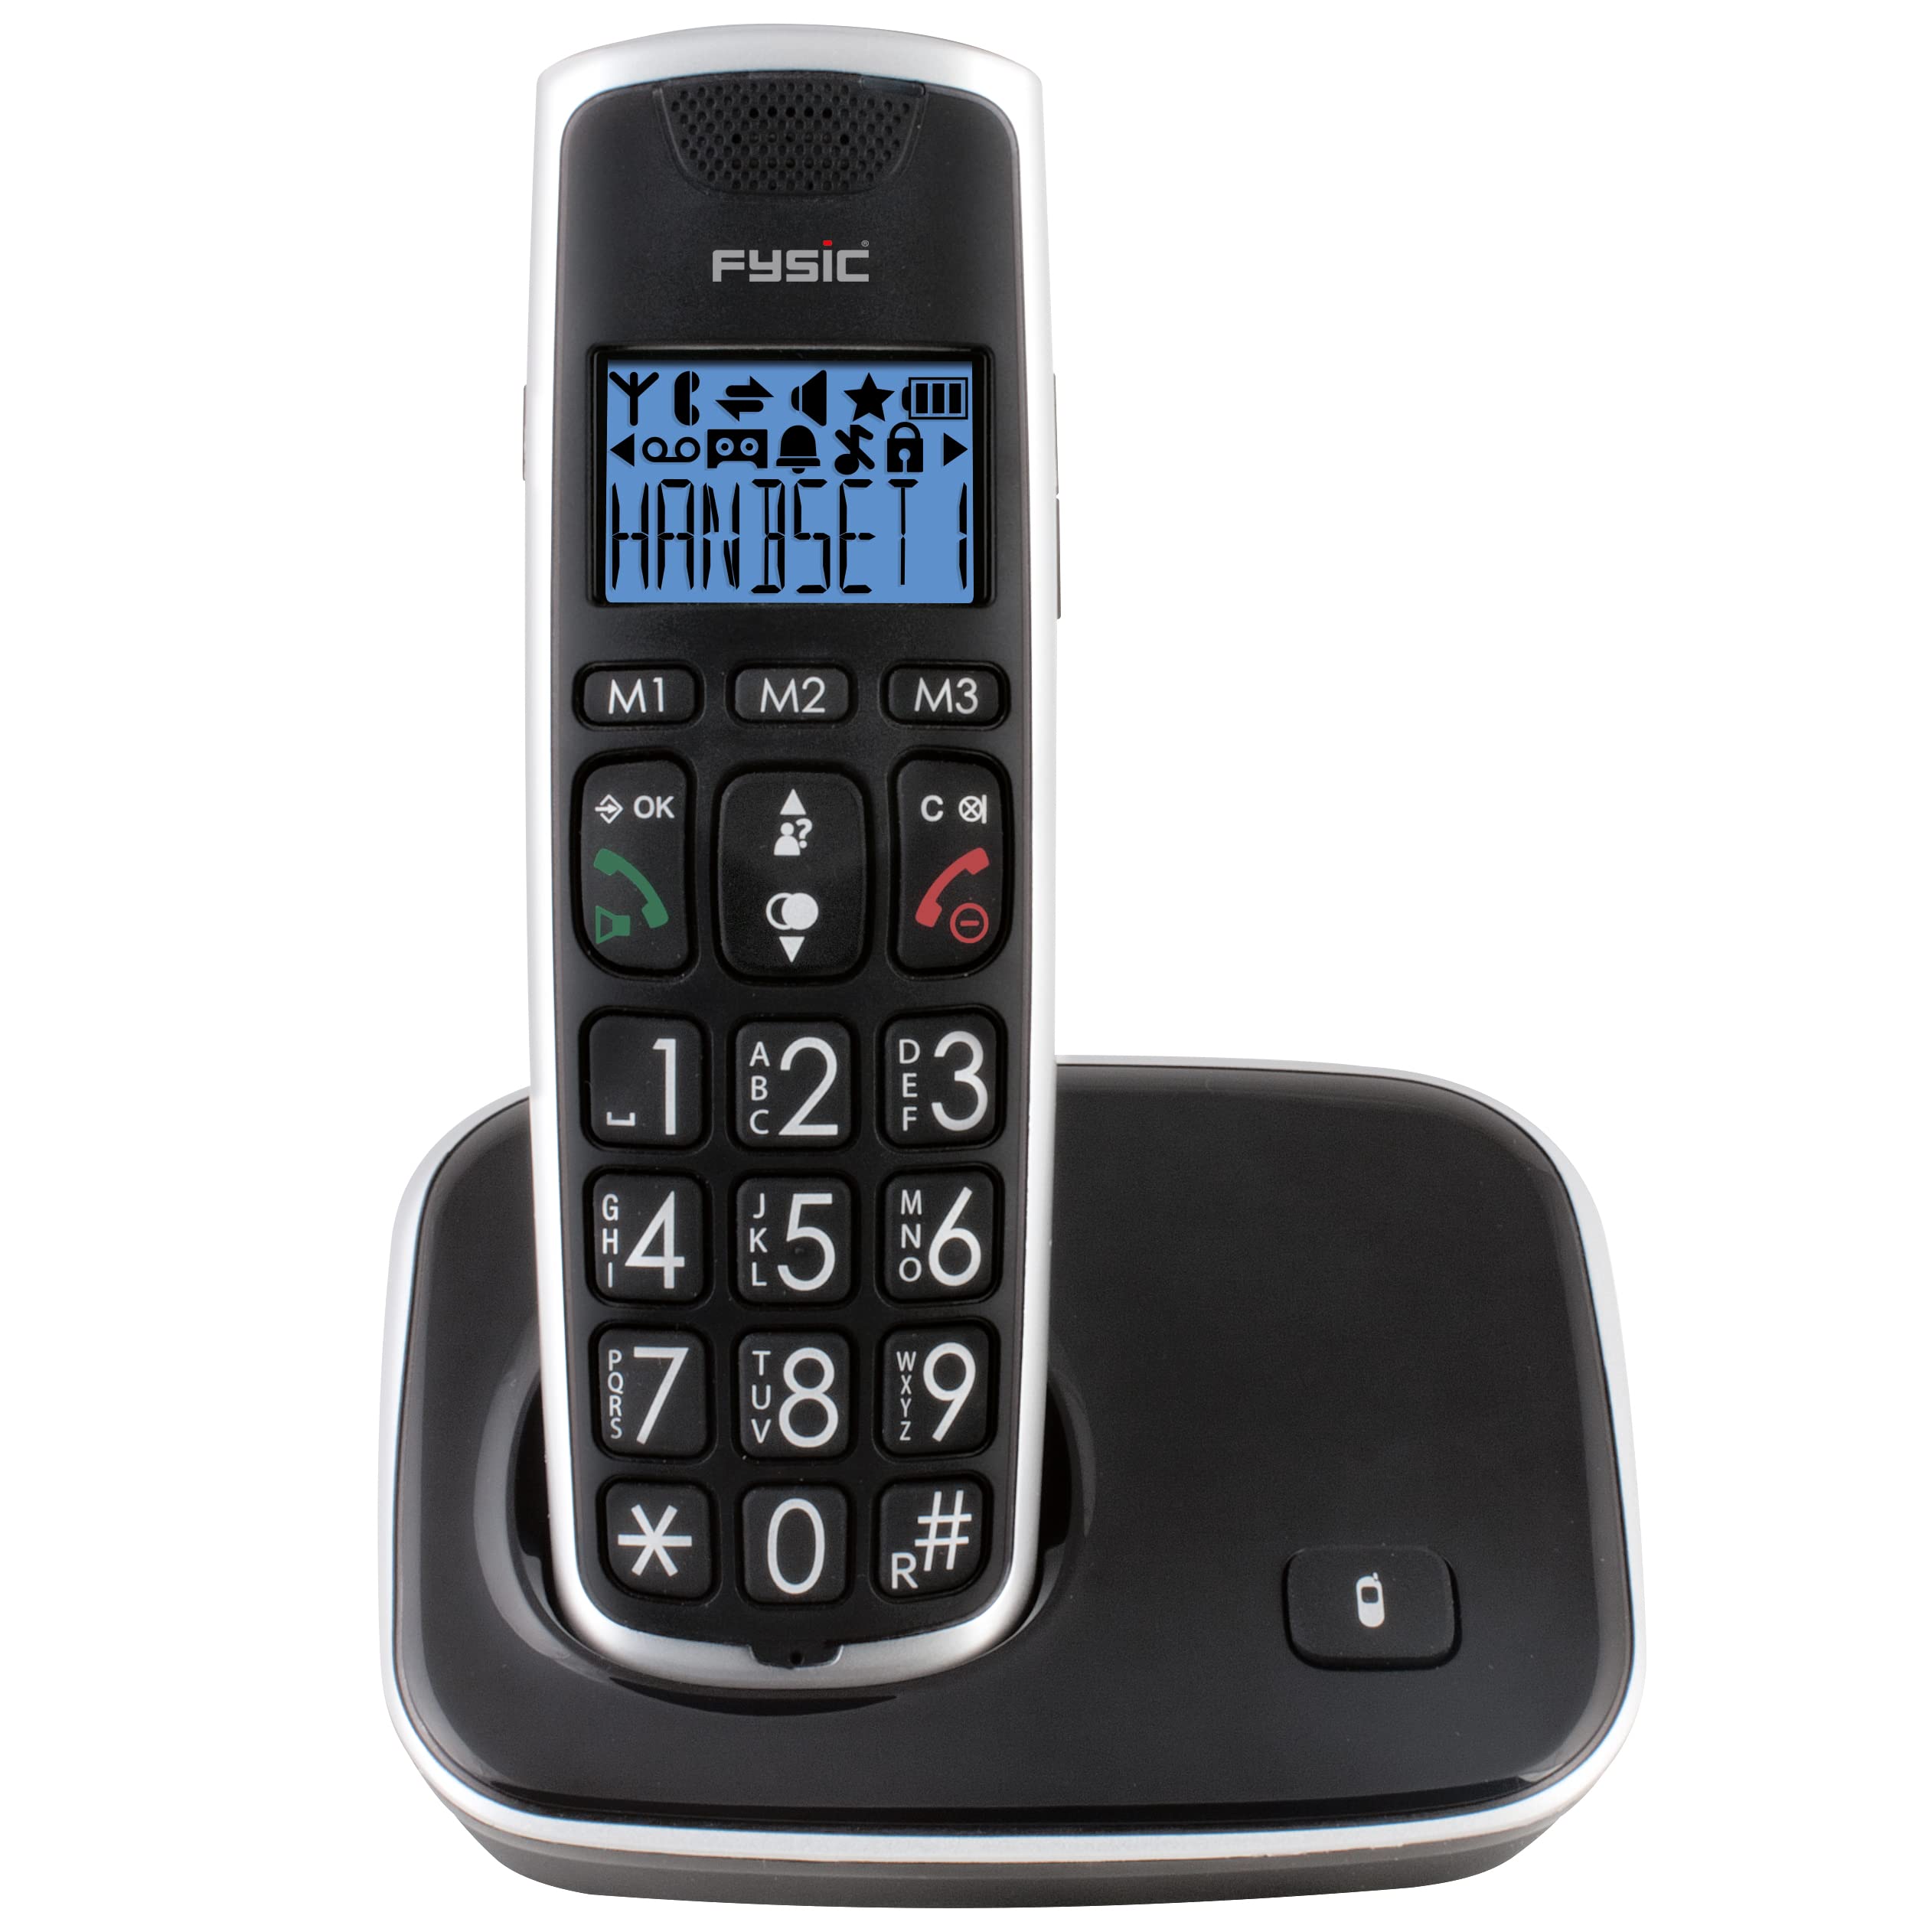 FX-6000 Schnurloses Festnetztelefon - extra große Tasten, einfache Bedienung, Klingelblitzlicht, Klingelton sehr laut einstellbar - Ideal für Senioren geeignet